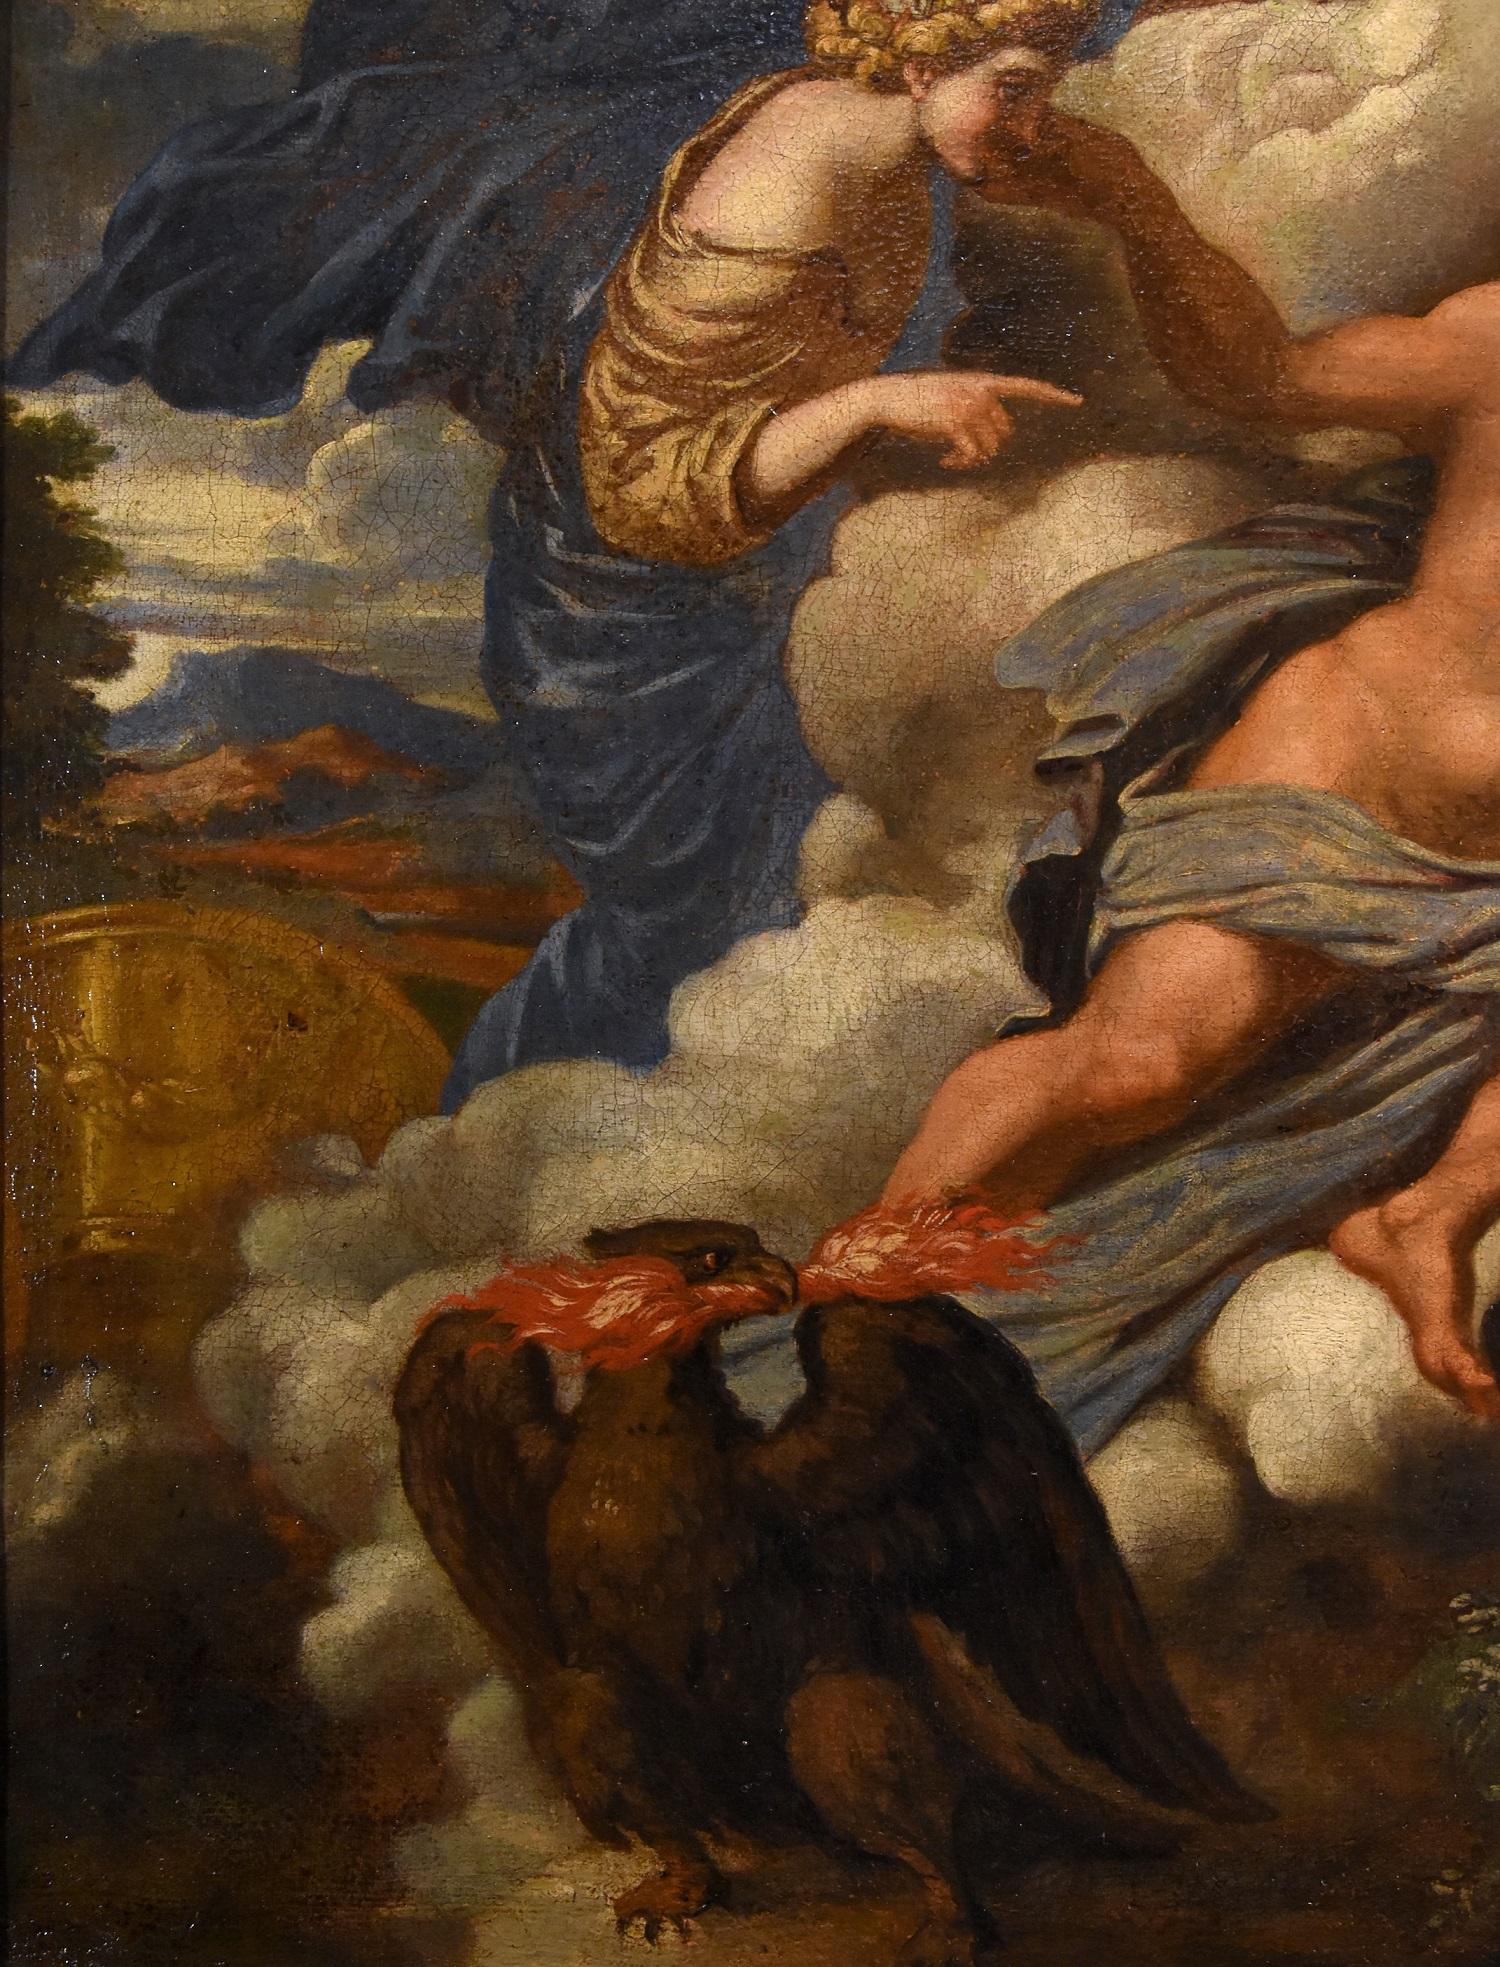 Mythologique Jupiter Canini Peinture Huile sur toile Ancien maître 17ème siècle Italie - Maîtres anciens Painting par Unknown